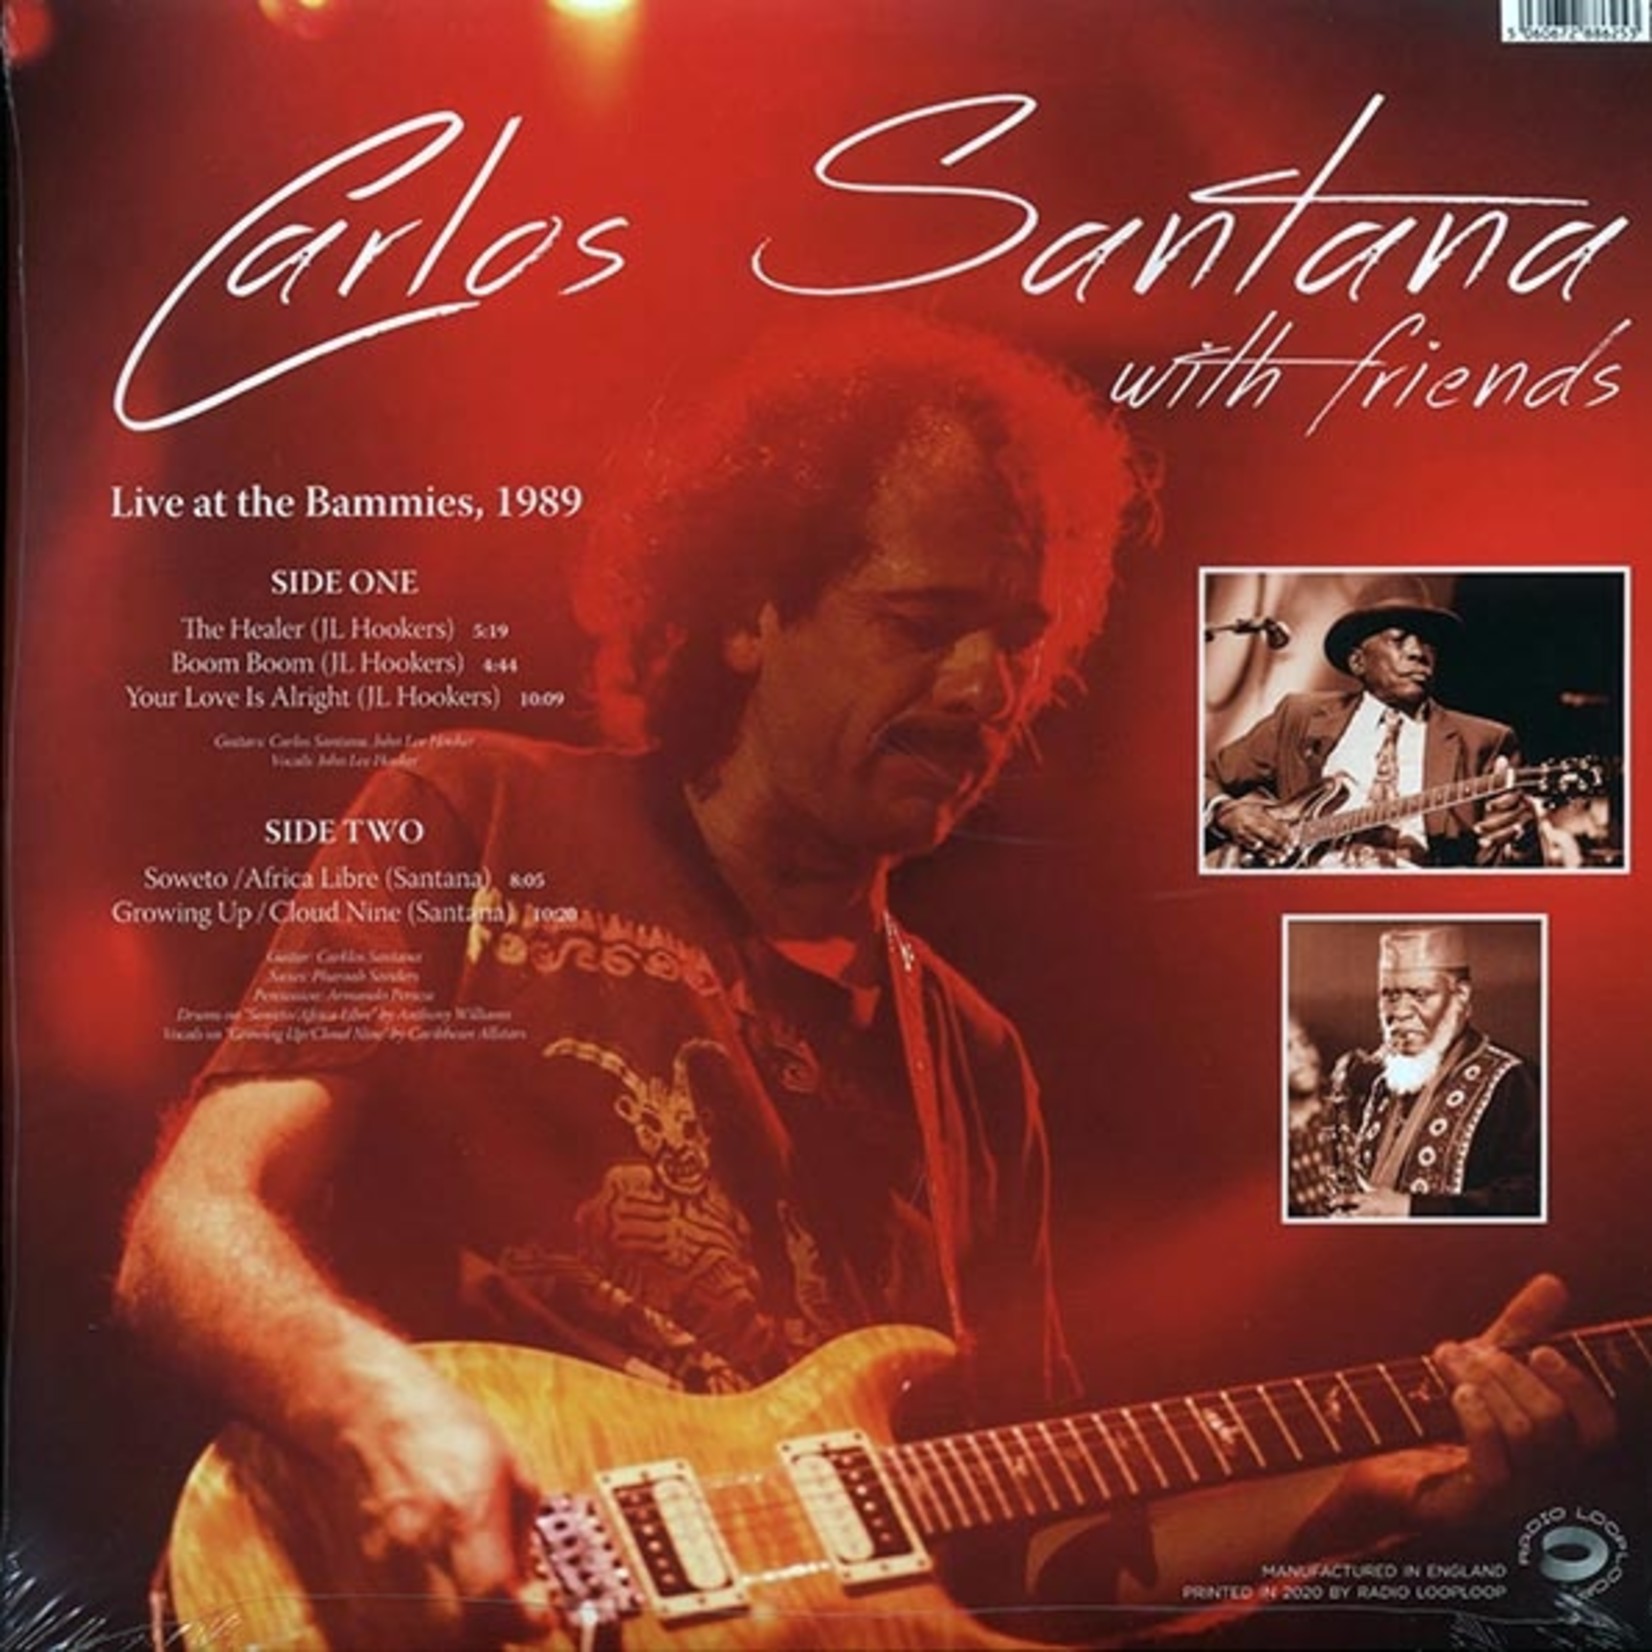 Carlos Santana - Live At The Bammies, 1989: Carlos Santana With Friends (Radio Looploop)